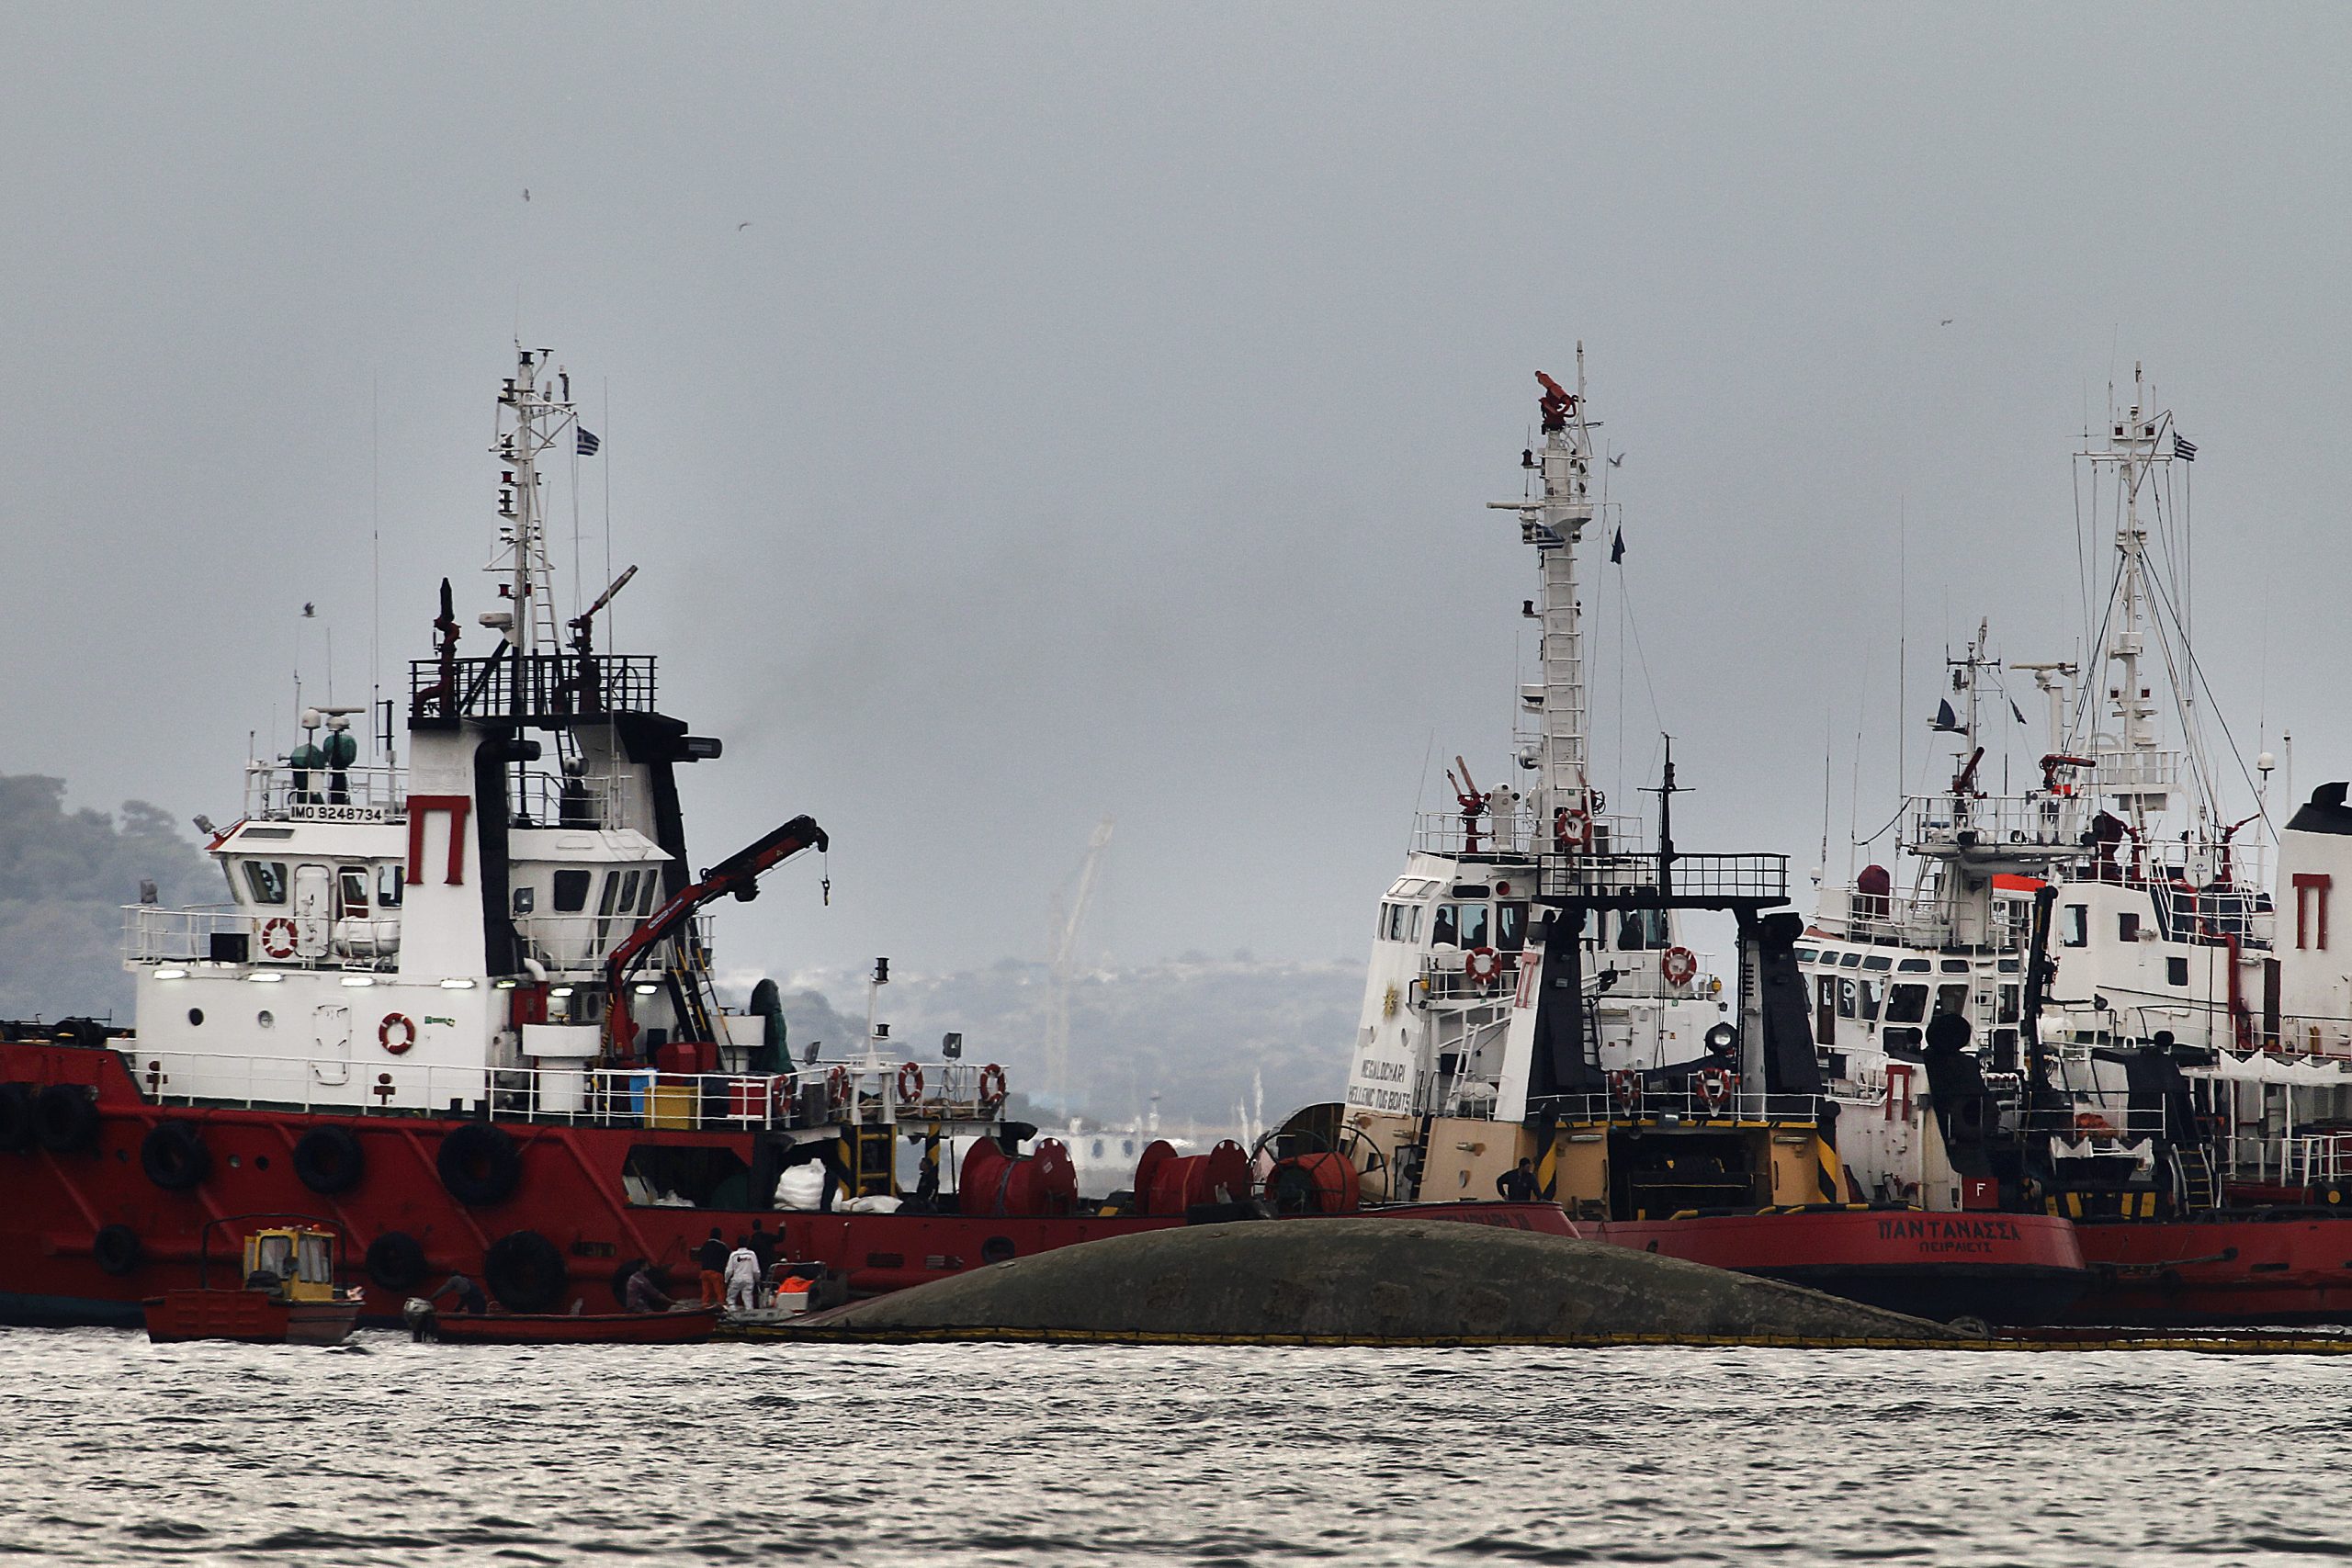 Ρυμουλκά – ναυαγοσωστικά: 48ωρη απεργία στις 7 και 8 Δεκέμβρη για την υπογραφή συλλογικής σύμβασης